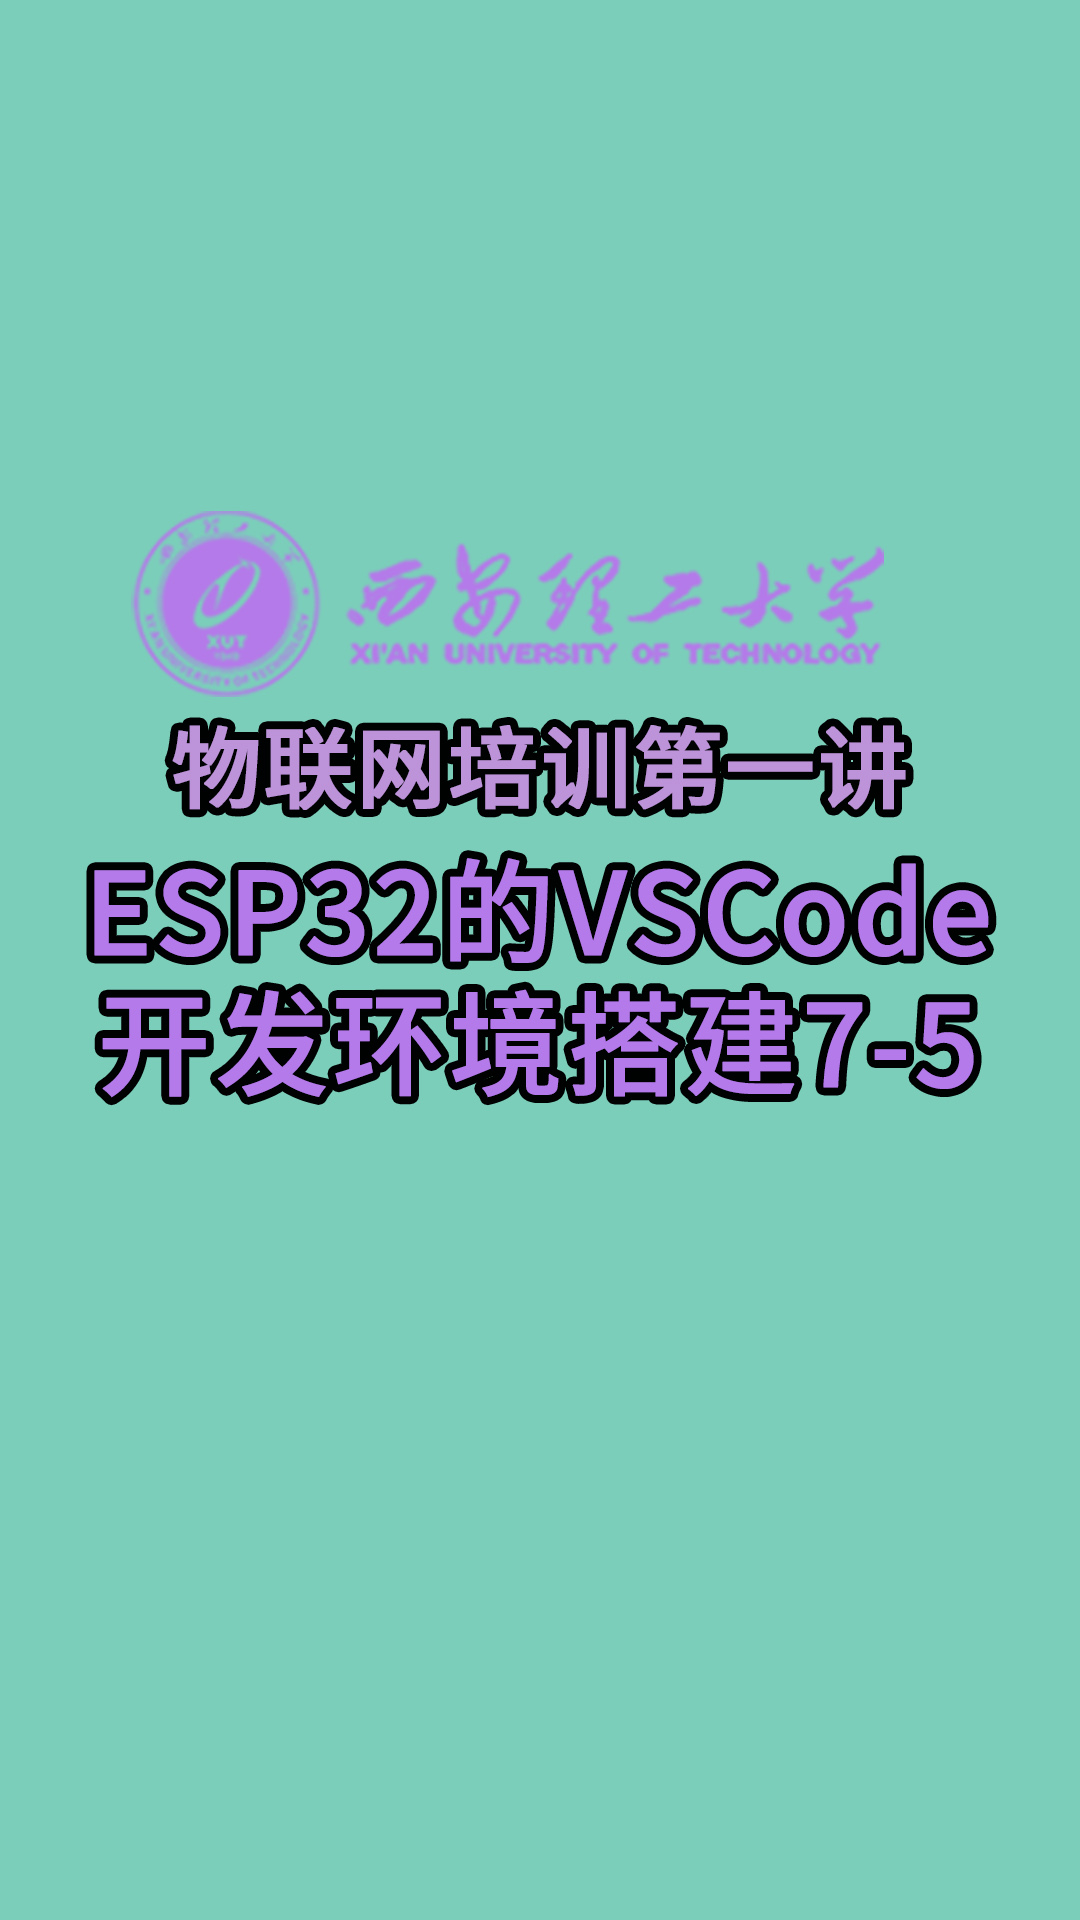 西安理工大学-物联网培训第一讲-ESP32的VSCode开发环境搭建7-5#物联网 